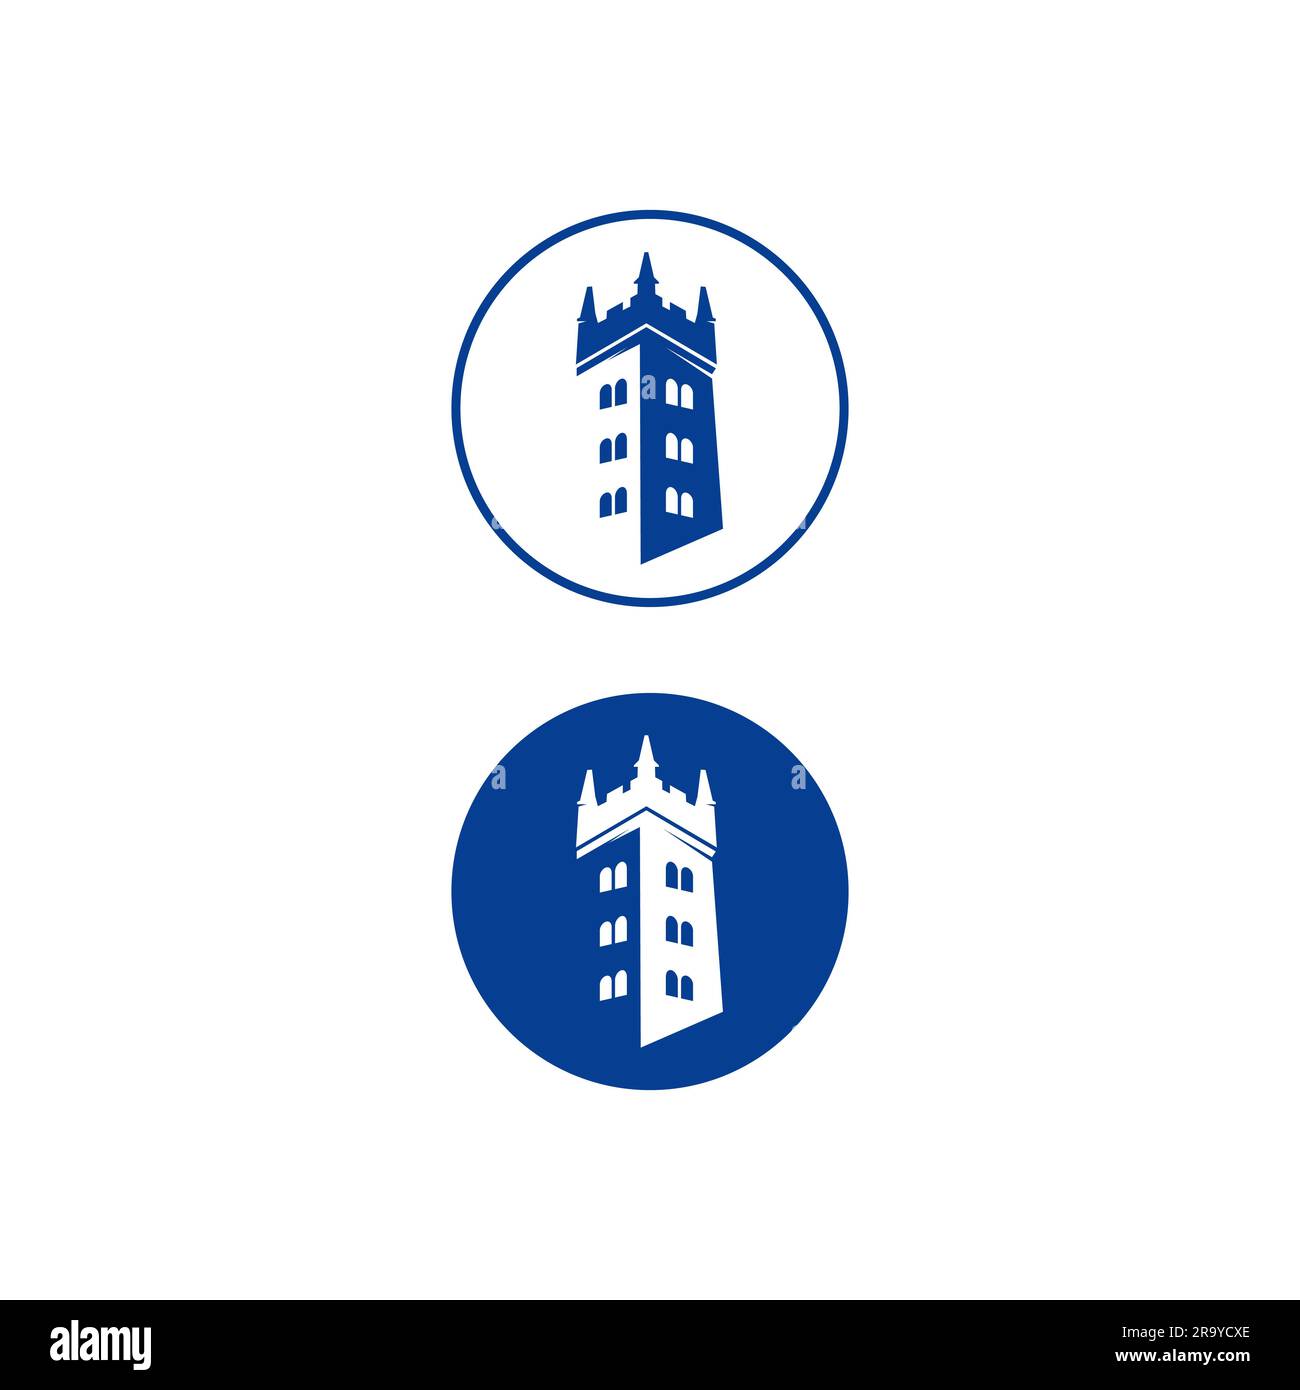 Semplice logo vettoriale della torre medievale del castello in una cornice rotonda.EPS 10 Illustrazione Vettoriale